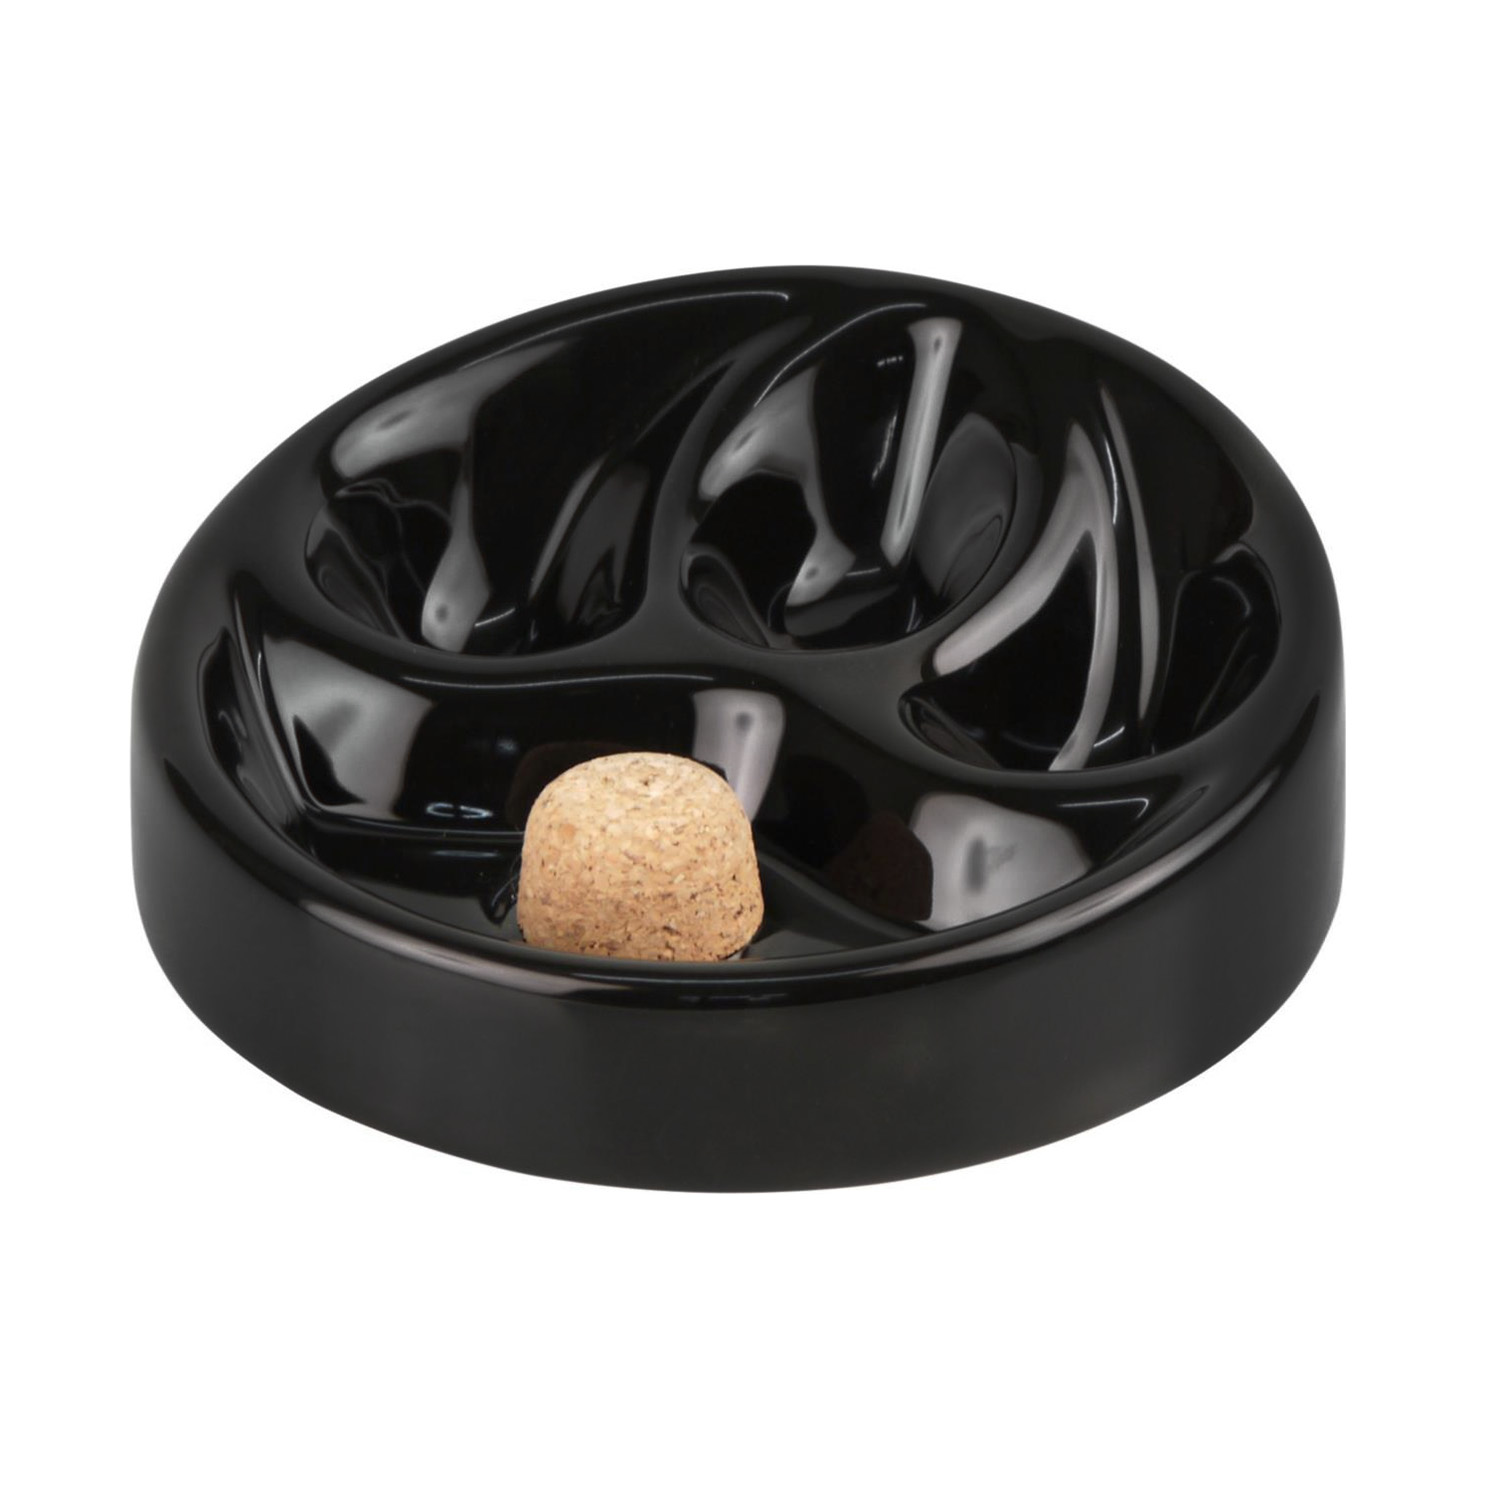 Pipe ashtray ceramic black shiny, 3 trays